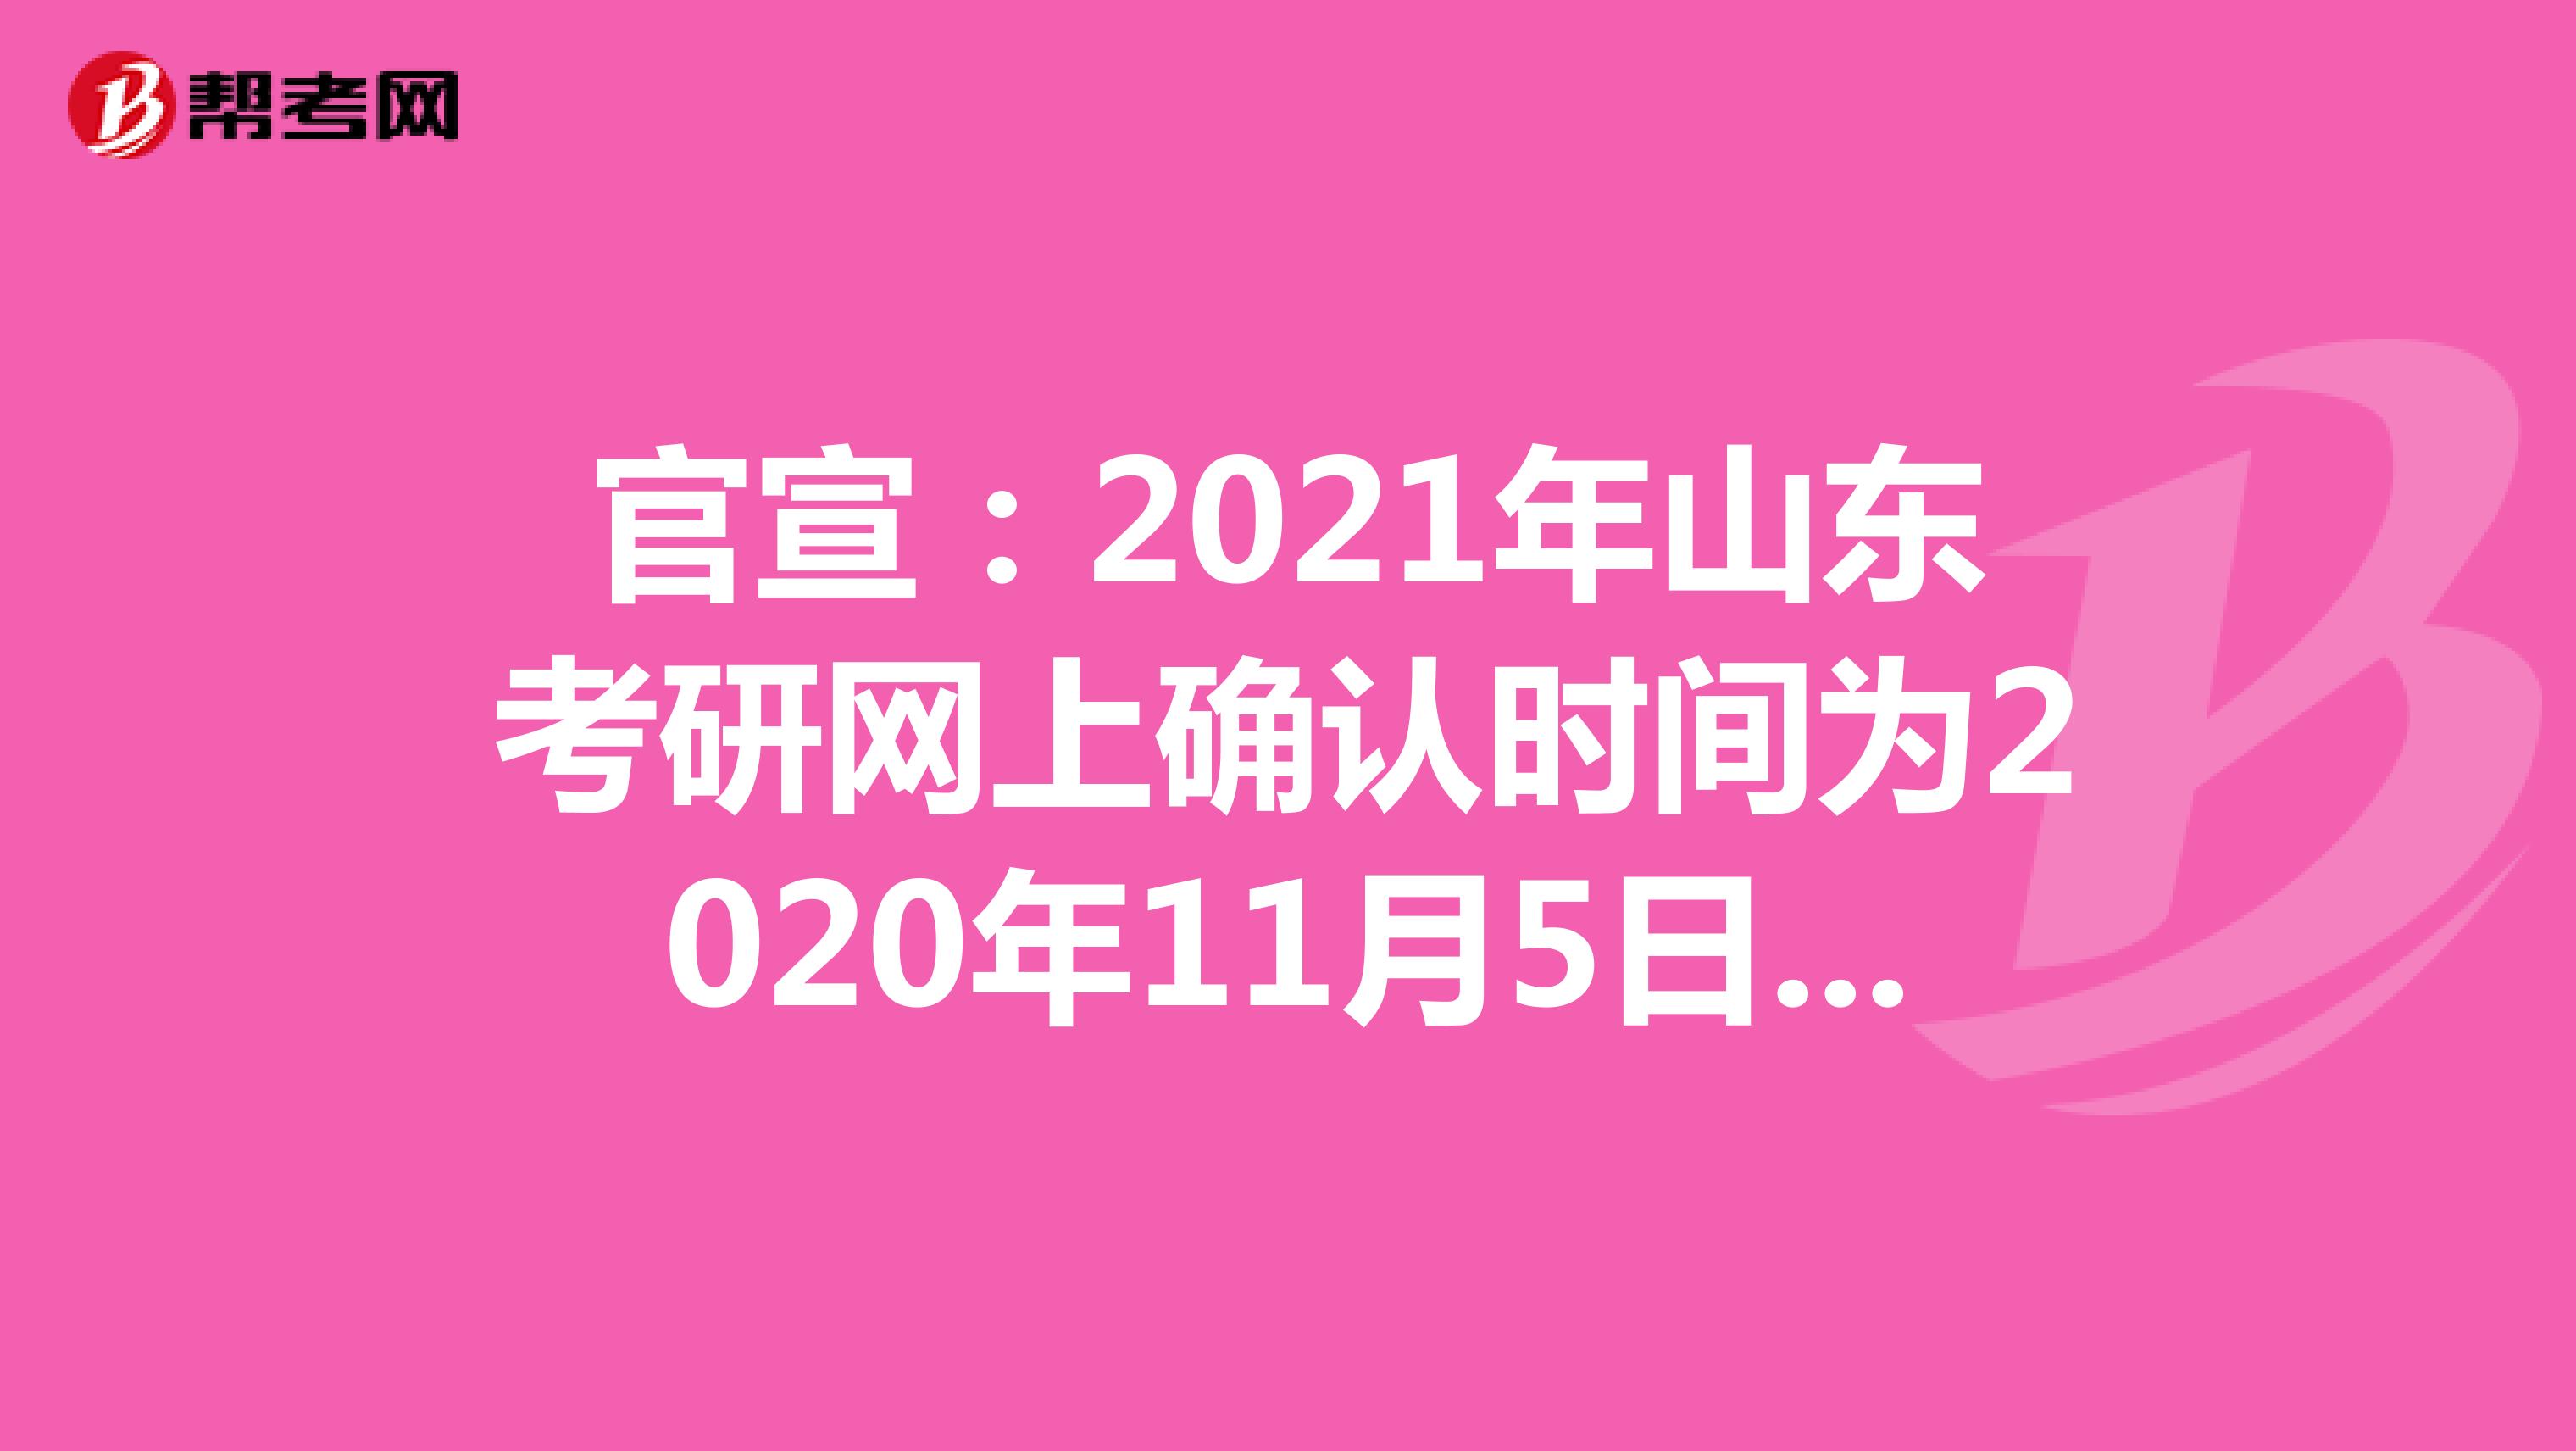 官宣：2021年山东考研网上确认时间为2020年11月5日-9日